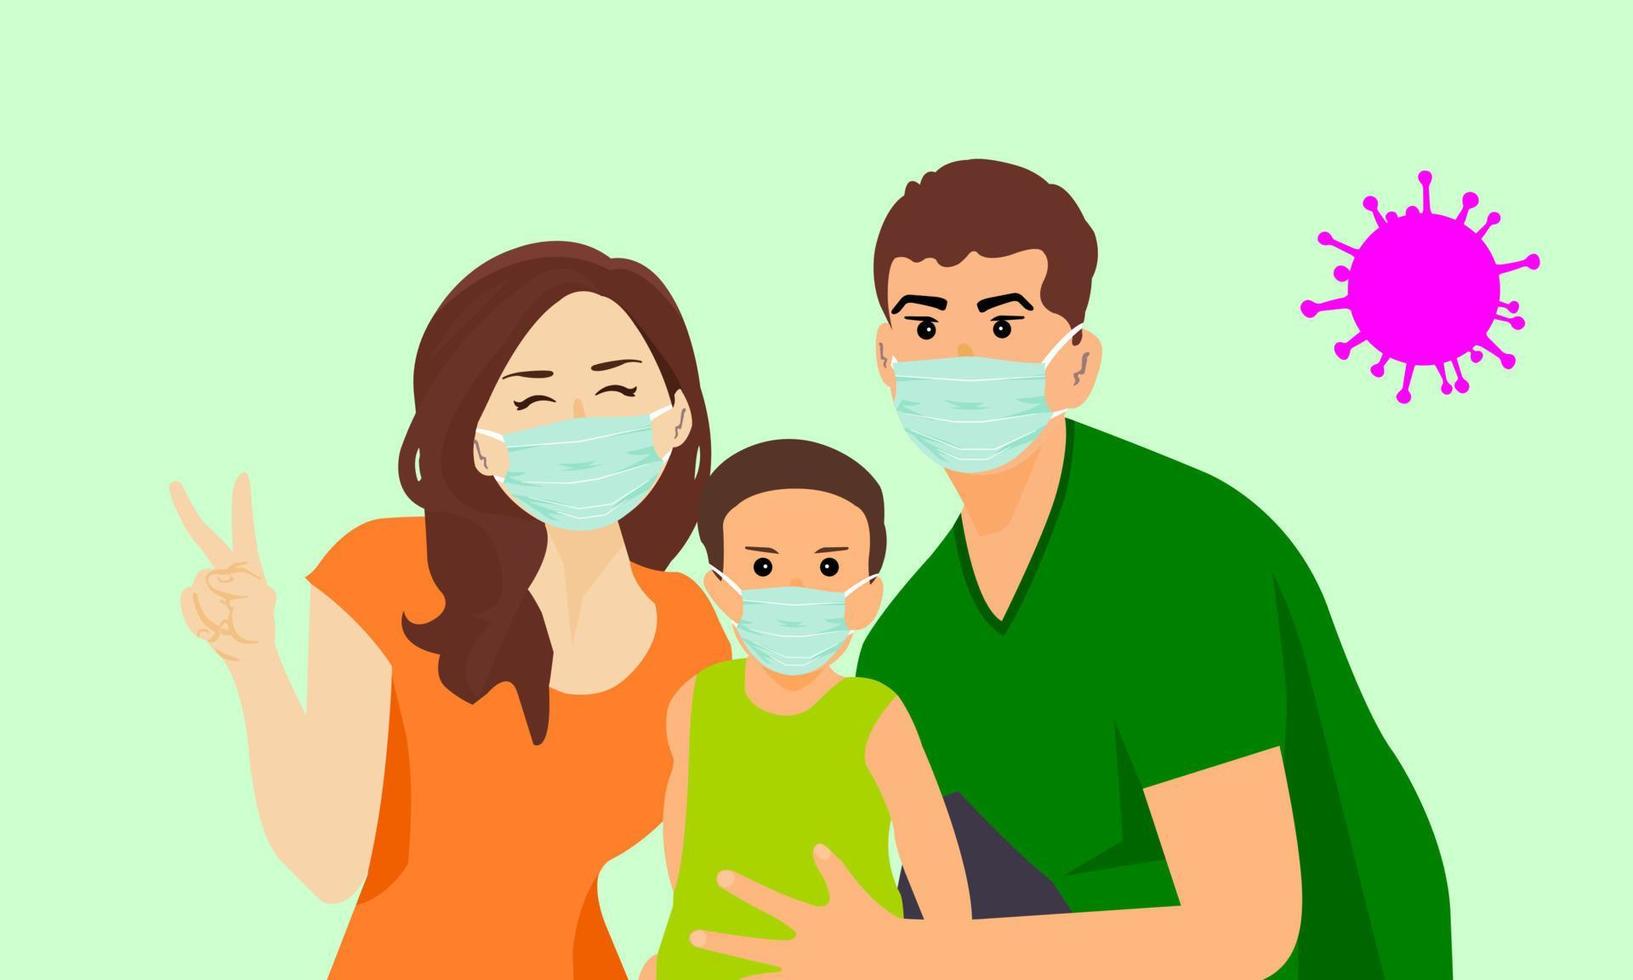 la famille porte un masque pour prévenir l'épidémie de coronavirus covid 19. la main droite de la mère montre le signe v. visage heureux.la main droite du père montrait des signes de protection de l'enfant. vecteur